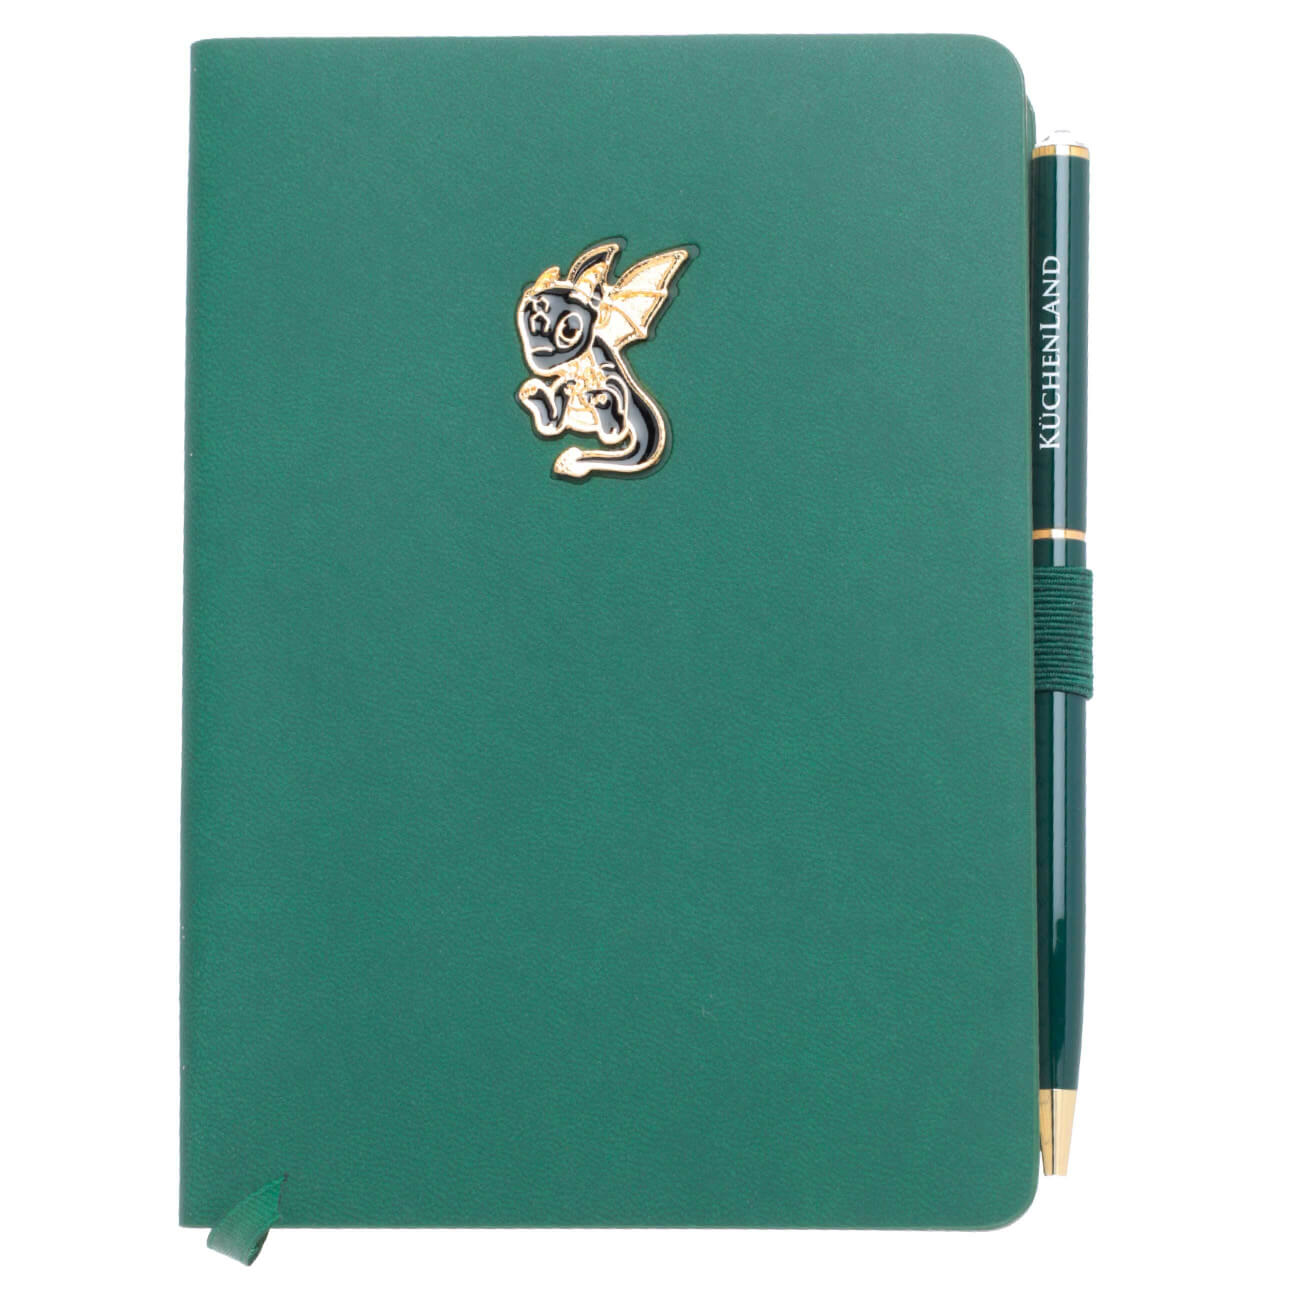 Блокнот для записей, 15х11 см, с ручкой, полиуретан, зеленый, Дракон с крыльями, Dragon spyro блокнот для эскизов fabriano schizzi а4 120 л 90 г